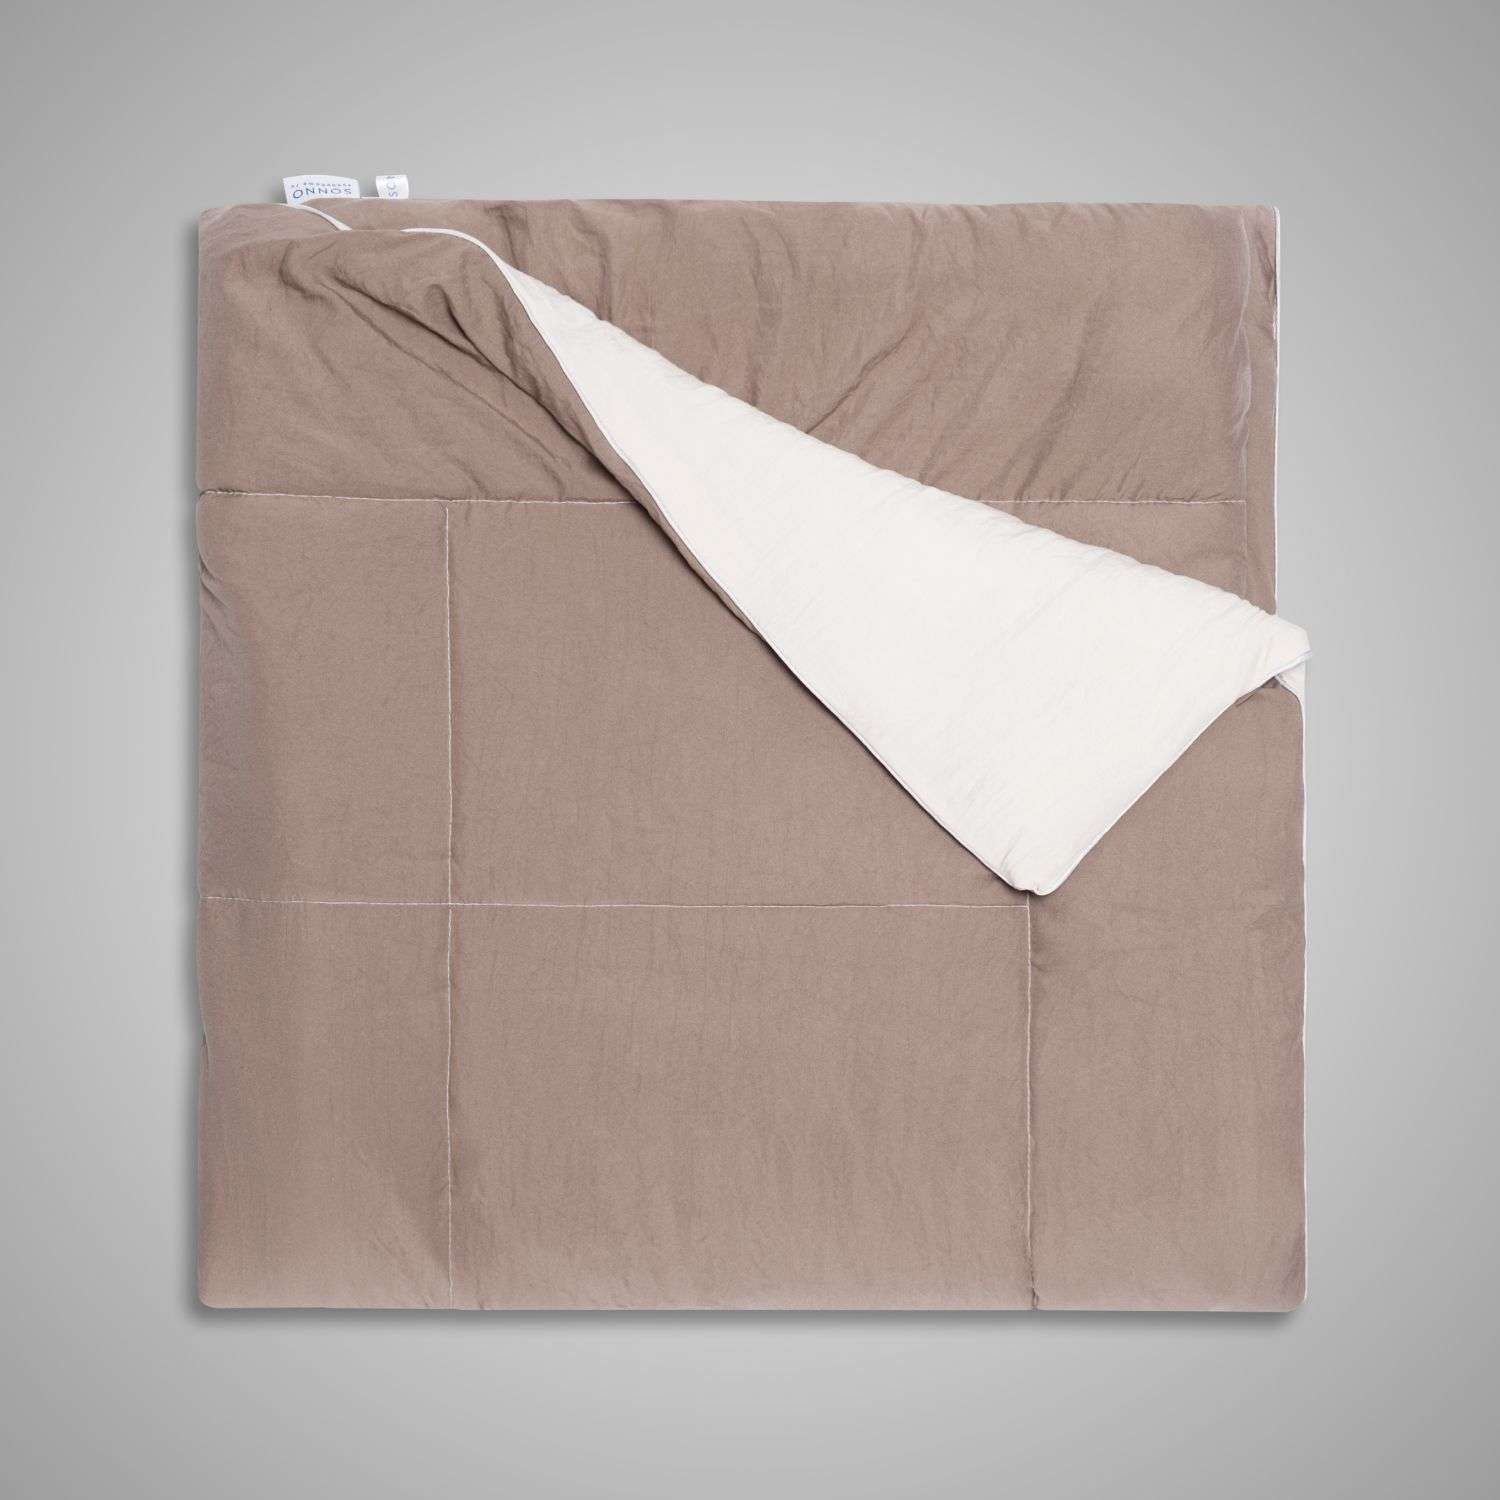 Одеяло SONNO TWIN 15 сп. 140х205 см цвет бежевый мокко - фото 4